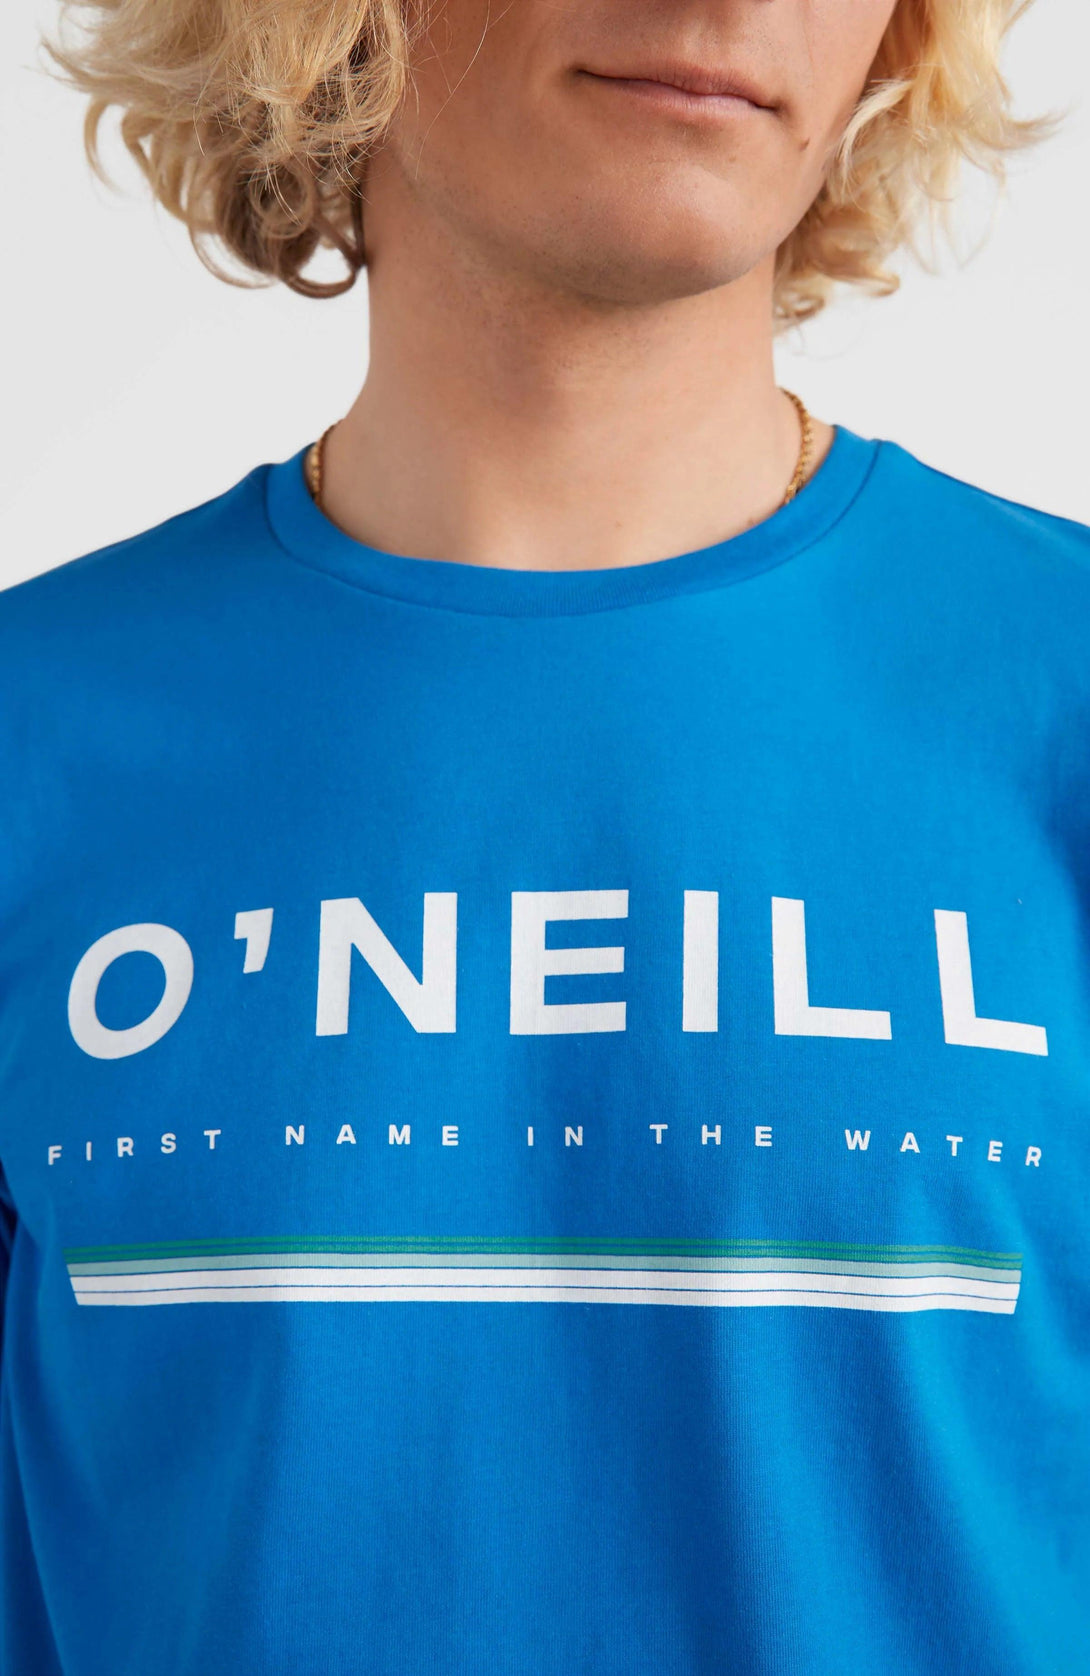 O'Neill Arrowhead póló, kék - Sportmania.hu